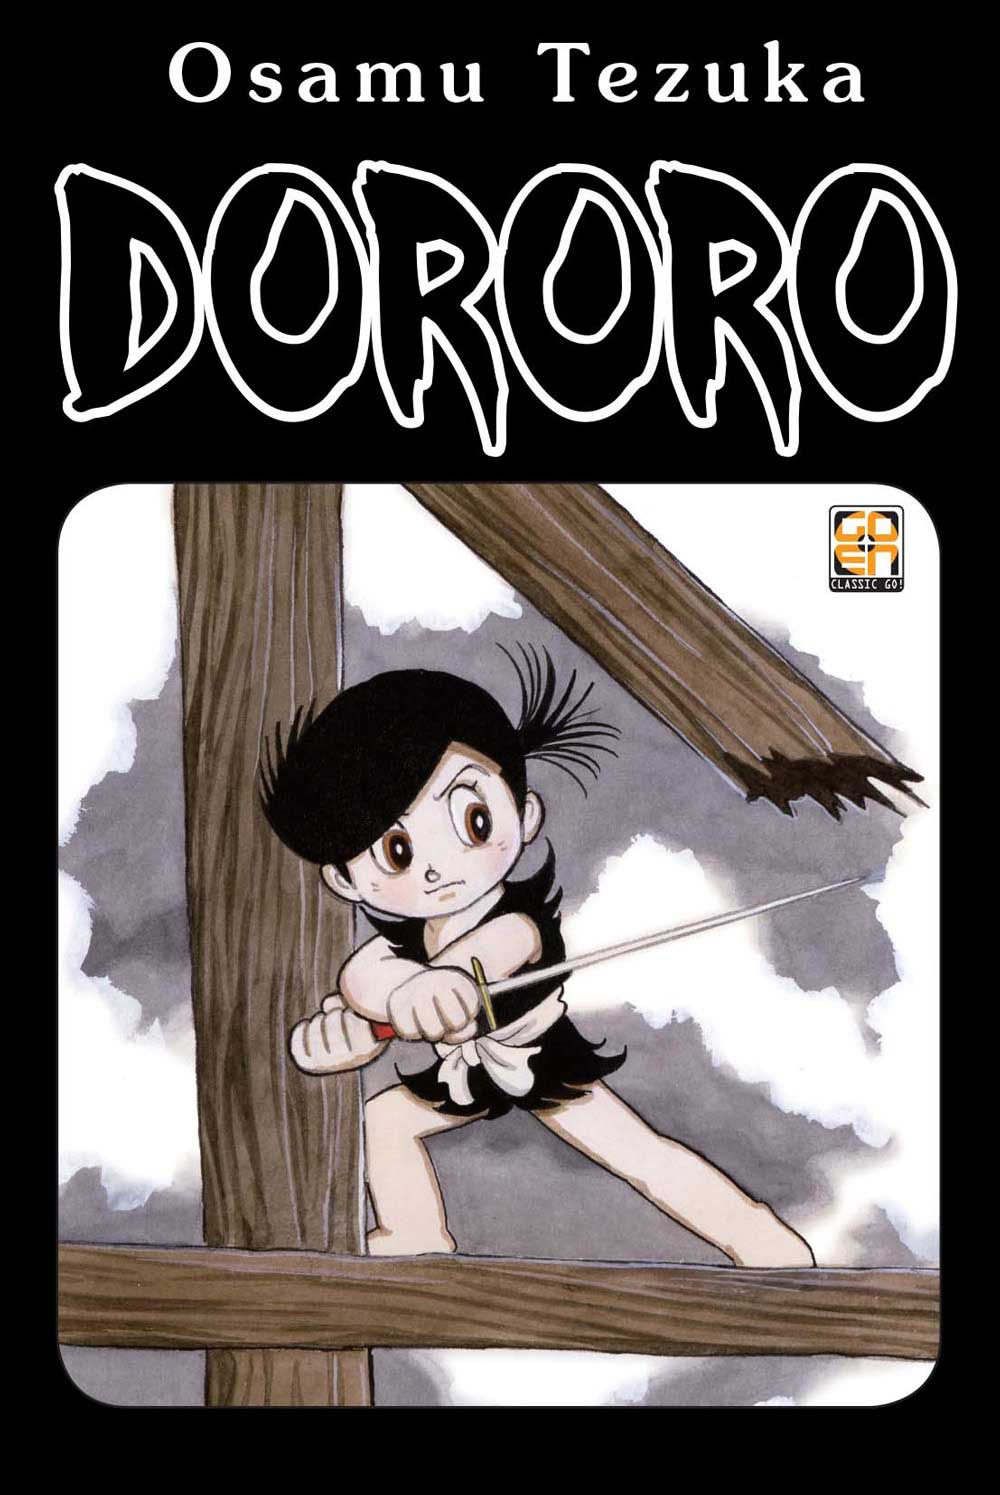 Libri Osamu Tezuka - Dororo Omnibus (Ristampa) NUOVO SIGILLATO, EDIZIONE DEL 09/09/2022 SUBITO DISPONIBILE